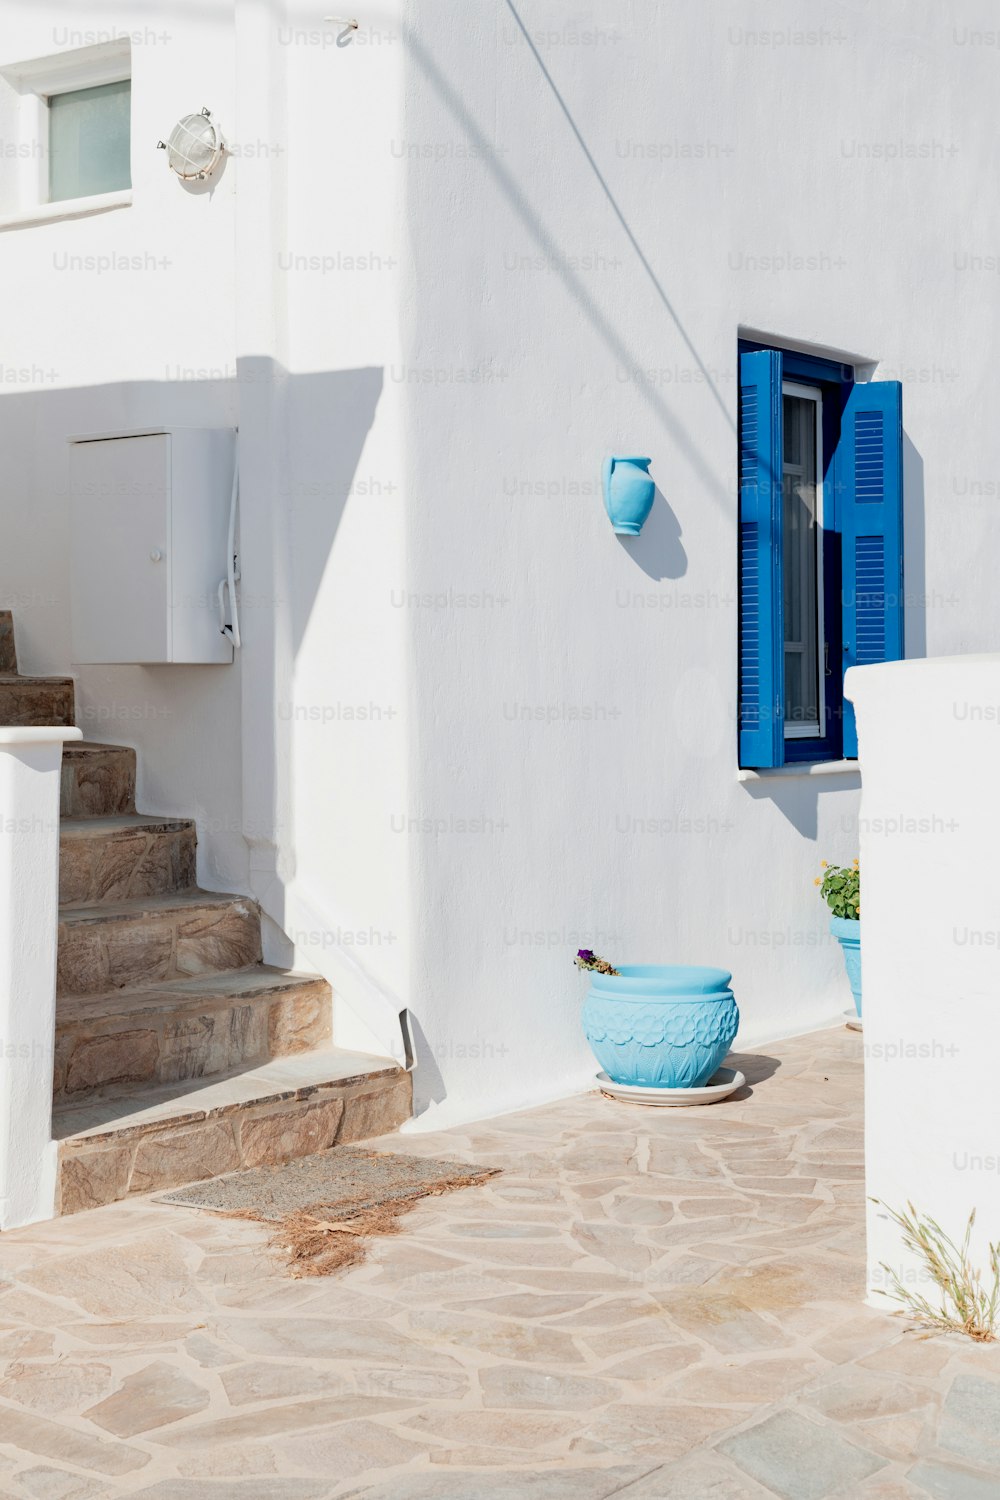 Une maison blanche avec des volets bleus et un bol bleu